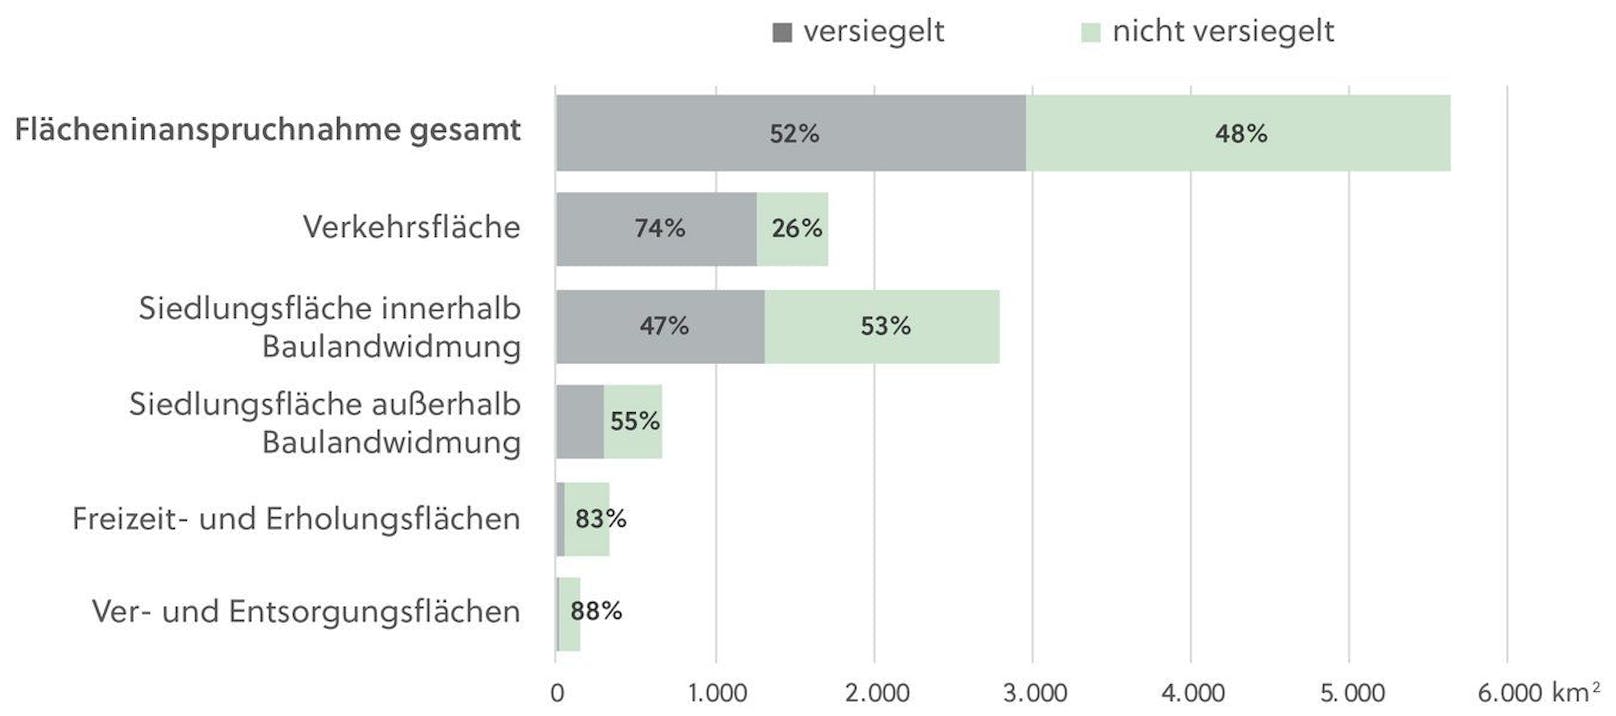 Anteil der Versiegelung an der Flächeninanspruchnahme nach Kategorien (in %) 2022.